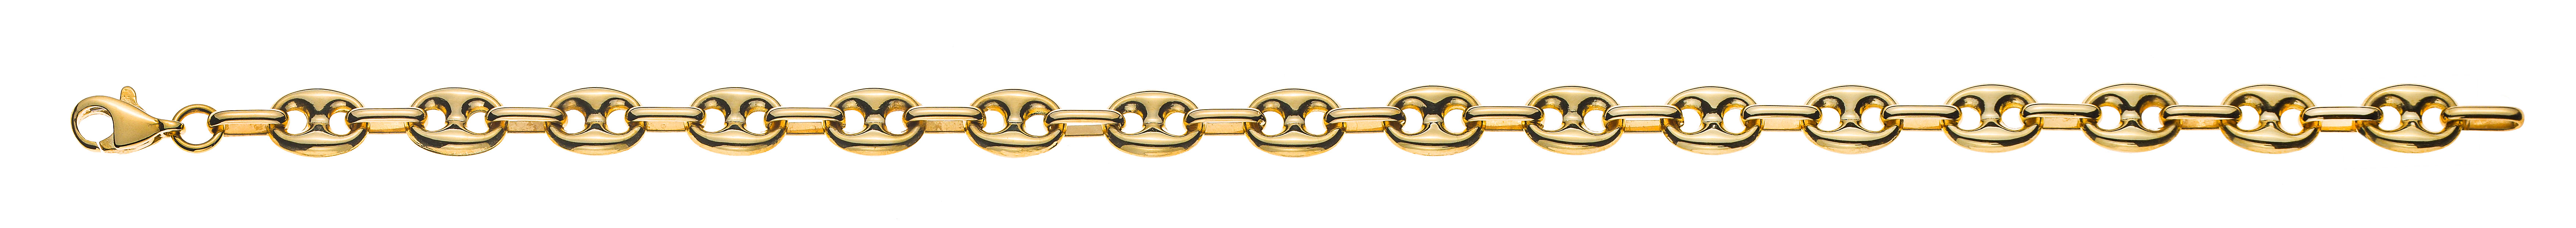 AURONOS Prestige Bracelet ancre de marine or jaune 18 carats 19cm 6mm